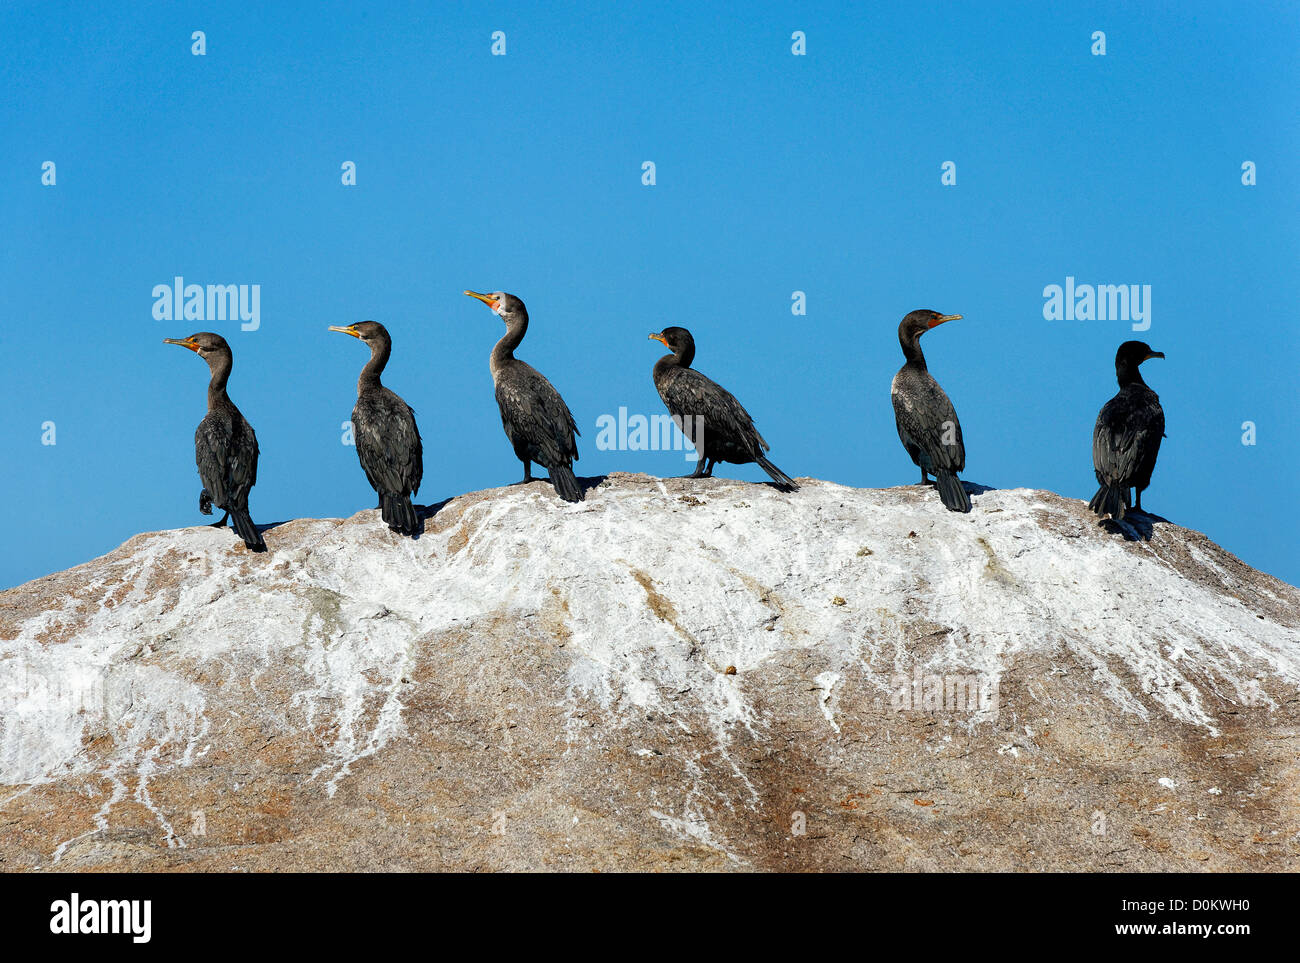 Grupo de cormoranes en una roca. Foto de stock